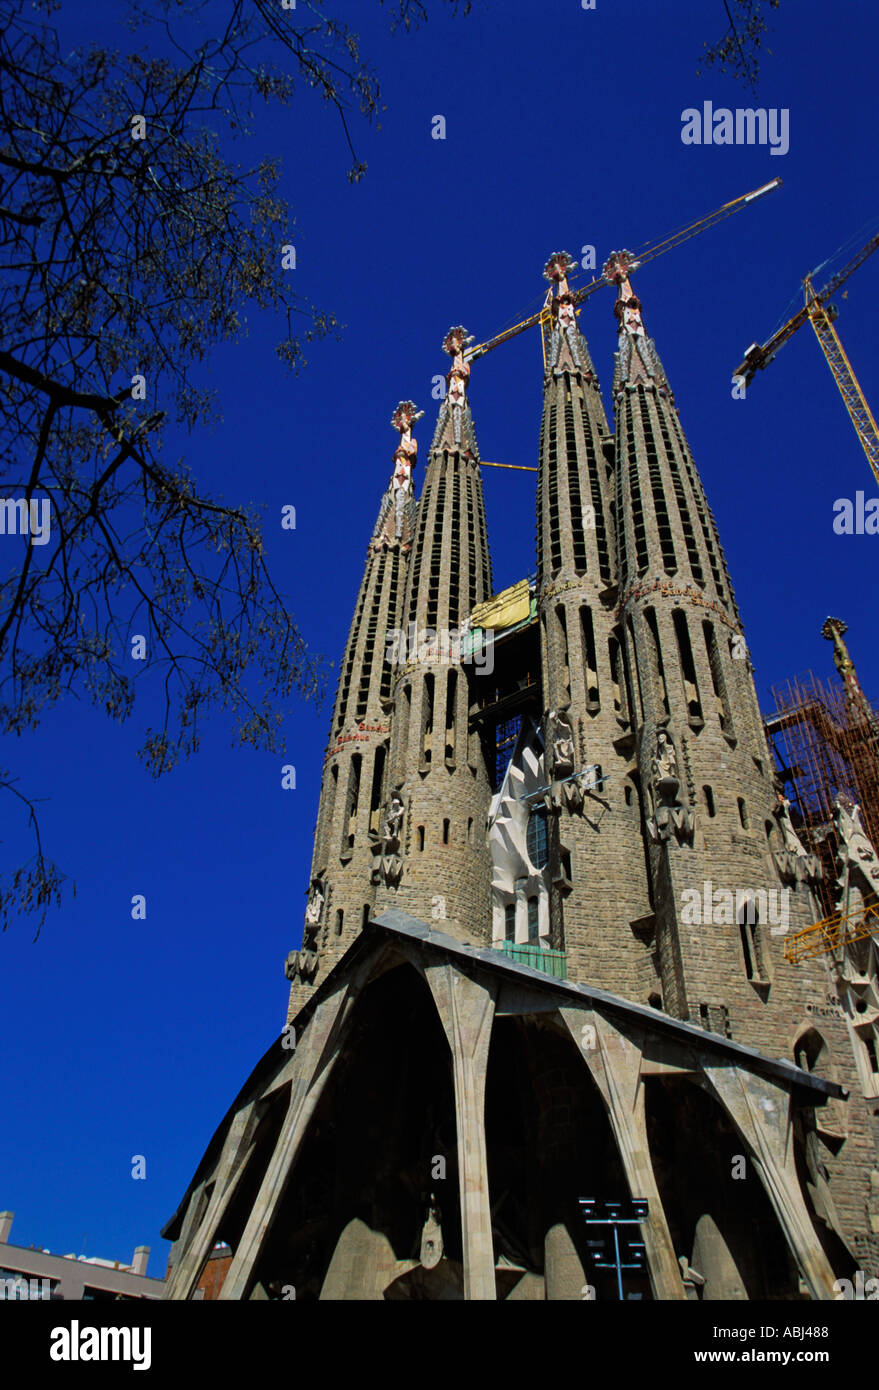 Barcellona, Sagrada Familia chiesa in costruzione. Data di scatto aprile 2004 Foto Stock